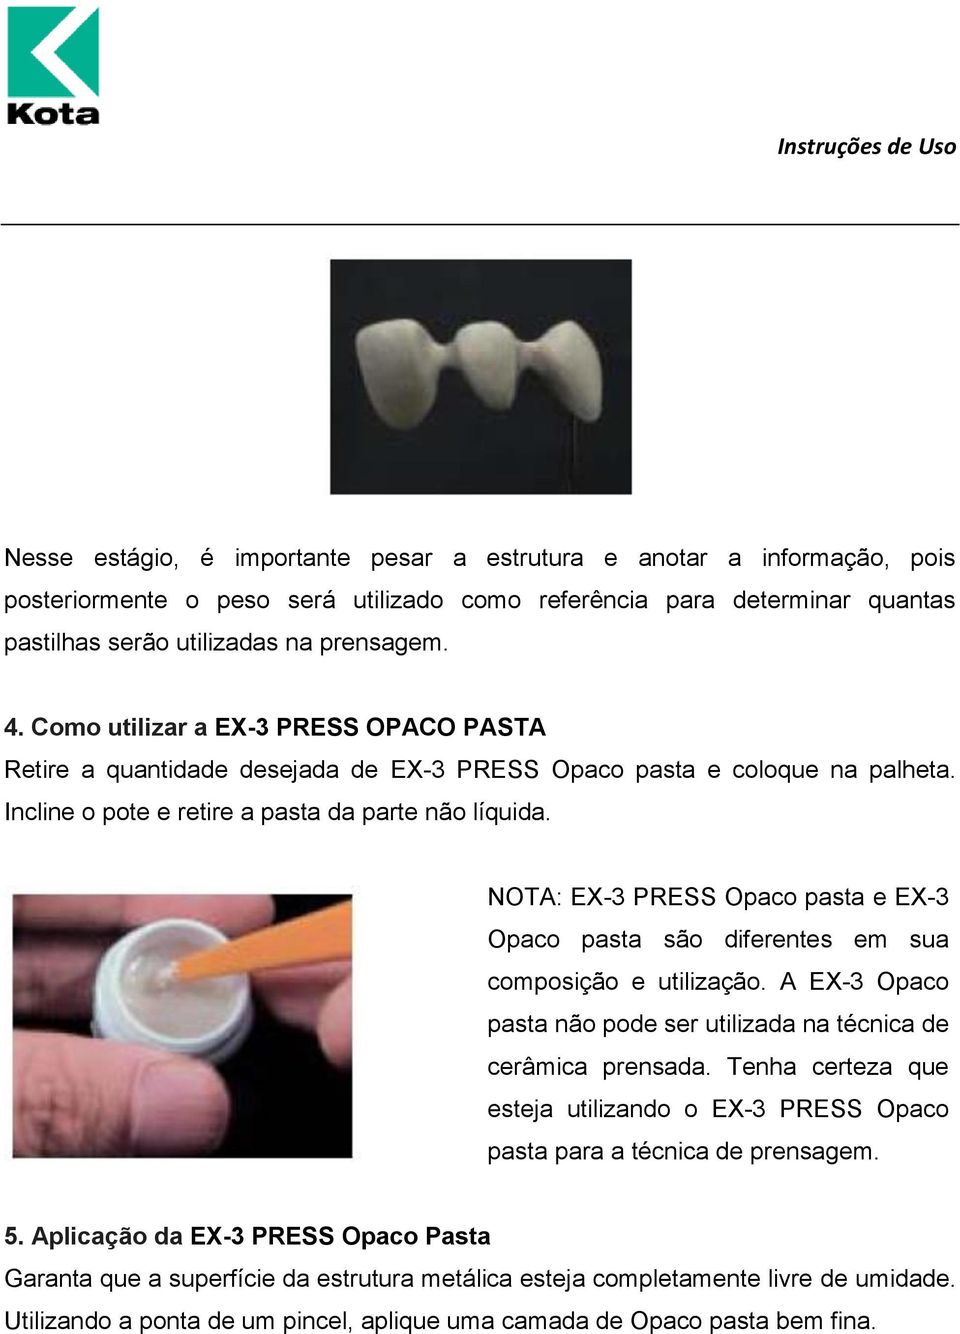 NOTA: EX-3 PRESS Opaco pasta e EX-3 Opaco pasta são diferentes em sua composição e utilização. A EX-3 Opaco pasta não pode ser utilizada na técnica de cerâmica prensada.